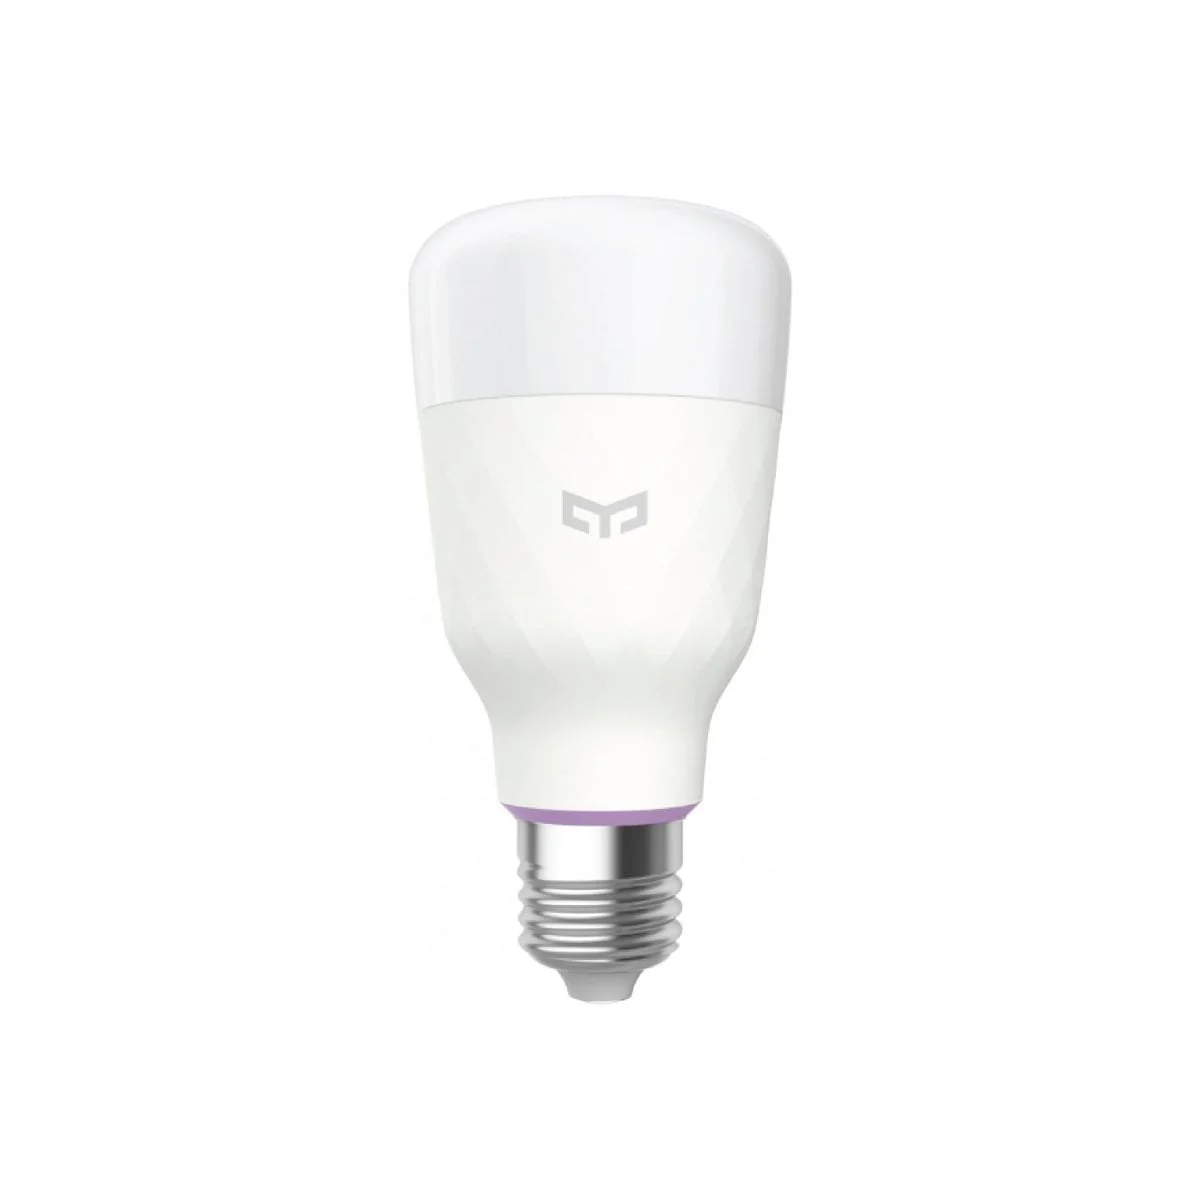 Bulb 26 شاومي سوف تسمح لك لمبة الإضاءة الذكية Yeelight 1S Rgb بإنشاء منزلك الذكي الخاص. يمكنك التحكم فيه بصوتك أو تطبيقك وتحديد درجة الحرارة والقوة التي يجب أن يلمع بها. التدفق الضوئي: 800 لومن درجة حرارة اللون: 1700 K-6500K حامل المصباح: E27 الطاقة المقدرة: 8.5 واط &Nbsp; 16 مليون لون مع تمكين Wifi والتحكم الصوتي والتحكم في التطبيقات ومزامنة الموسيقى &Lt;Img Class=&Quot;Alignnone Wp-Image-8061 Size-Full&Quot; Src=&Quot;Https://Lablaab.com/Wp-Content/Uploads/2020/04/Bulb-27-2-Scaled.jpg&Quot; Alt=&Quot;&Quot; Width=&Quot;2560&Quot; Height=&Quot;357&Quot;&Gt; &Nbsp; ييلايت سمارت لمبة لمبة يلايت الذكية 1S (ألوان)